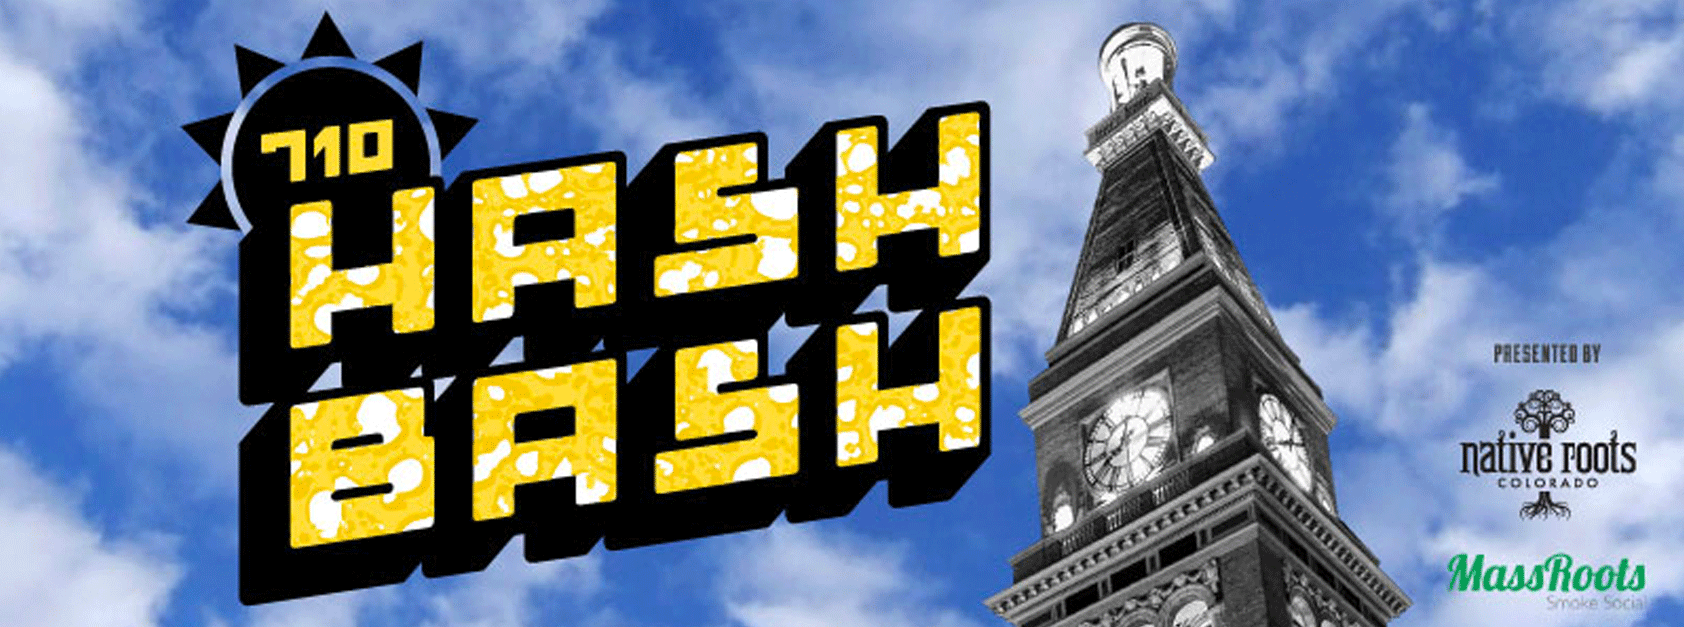 hash bash 2021